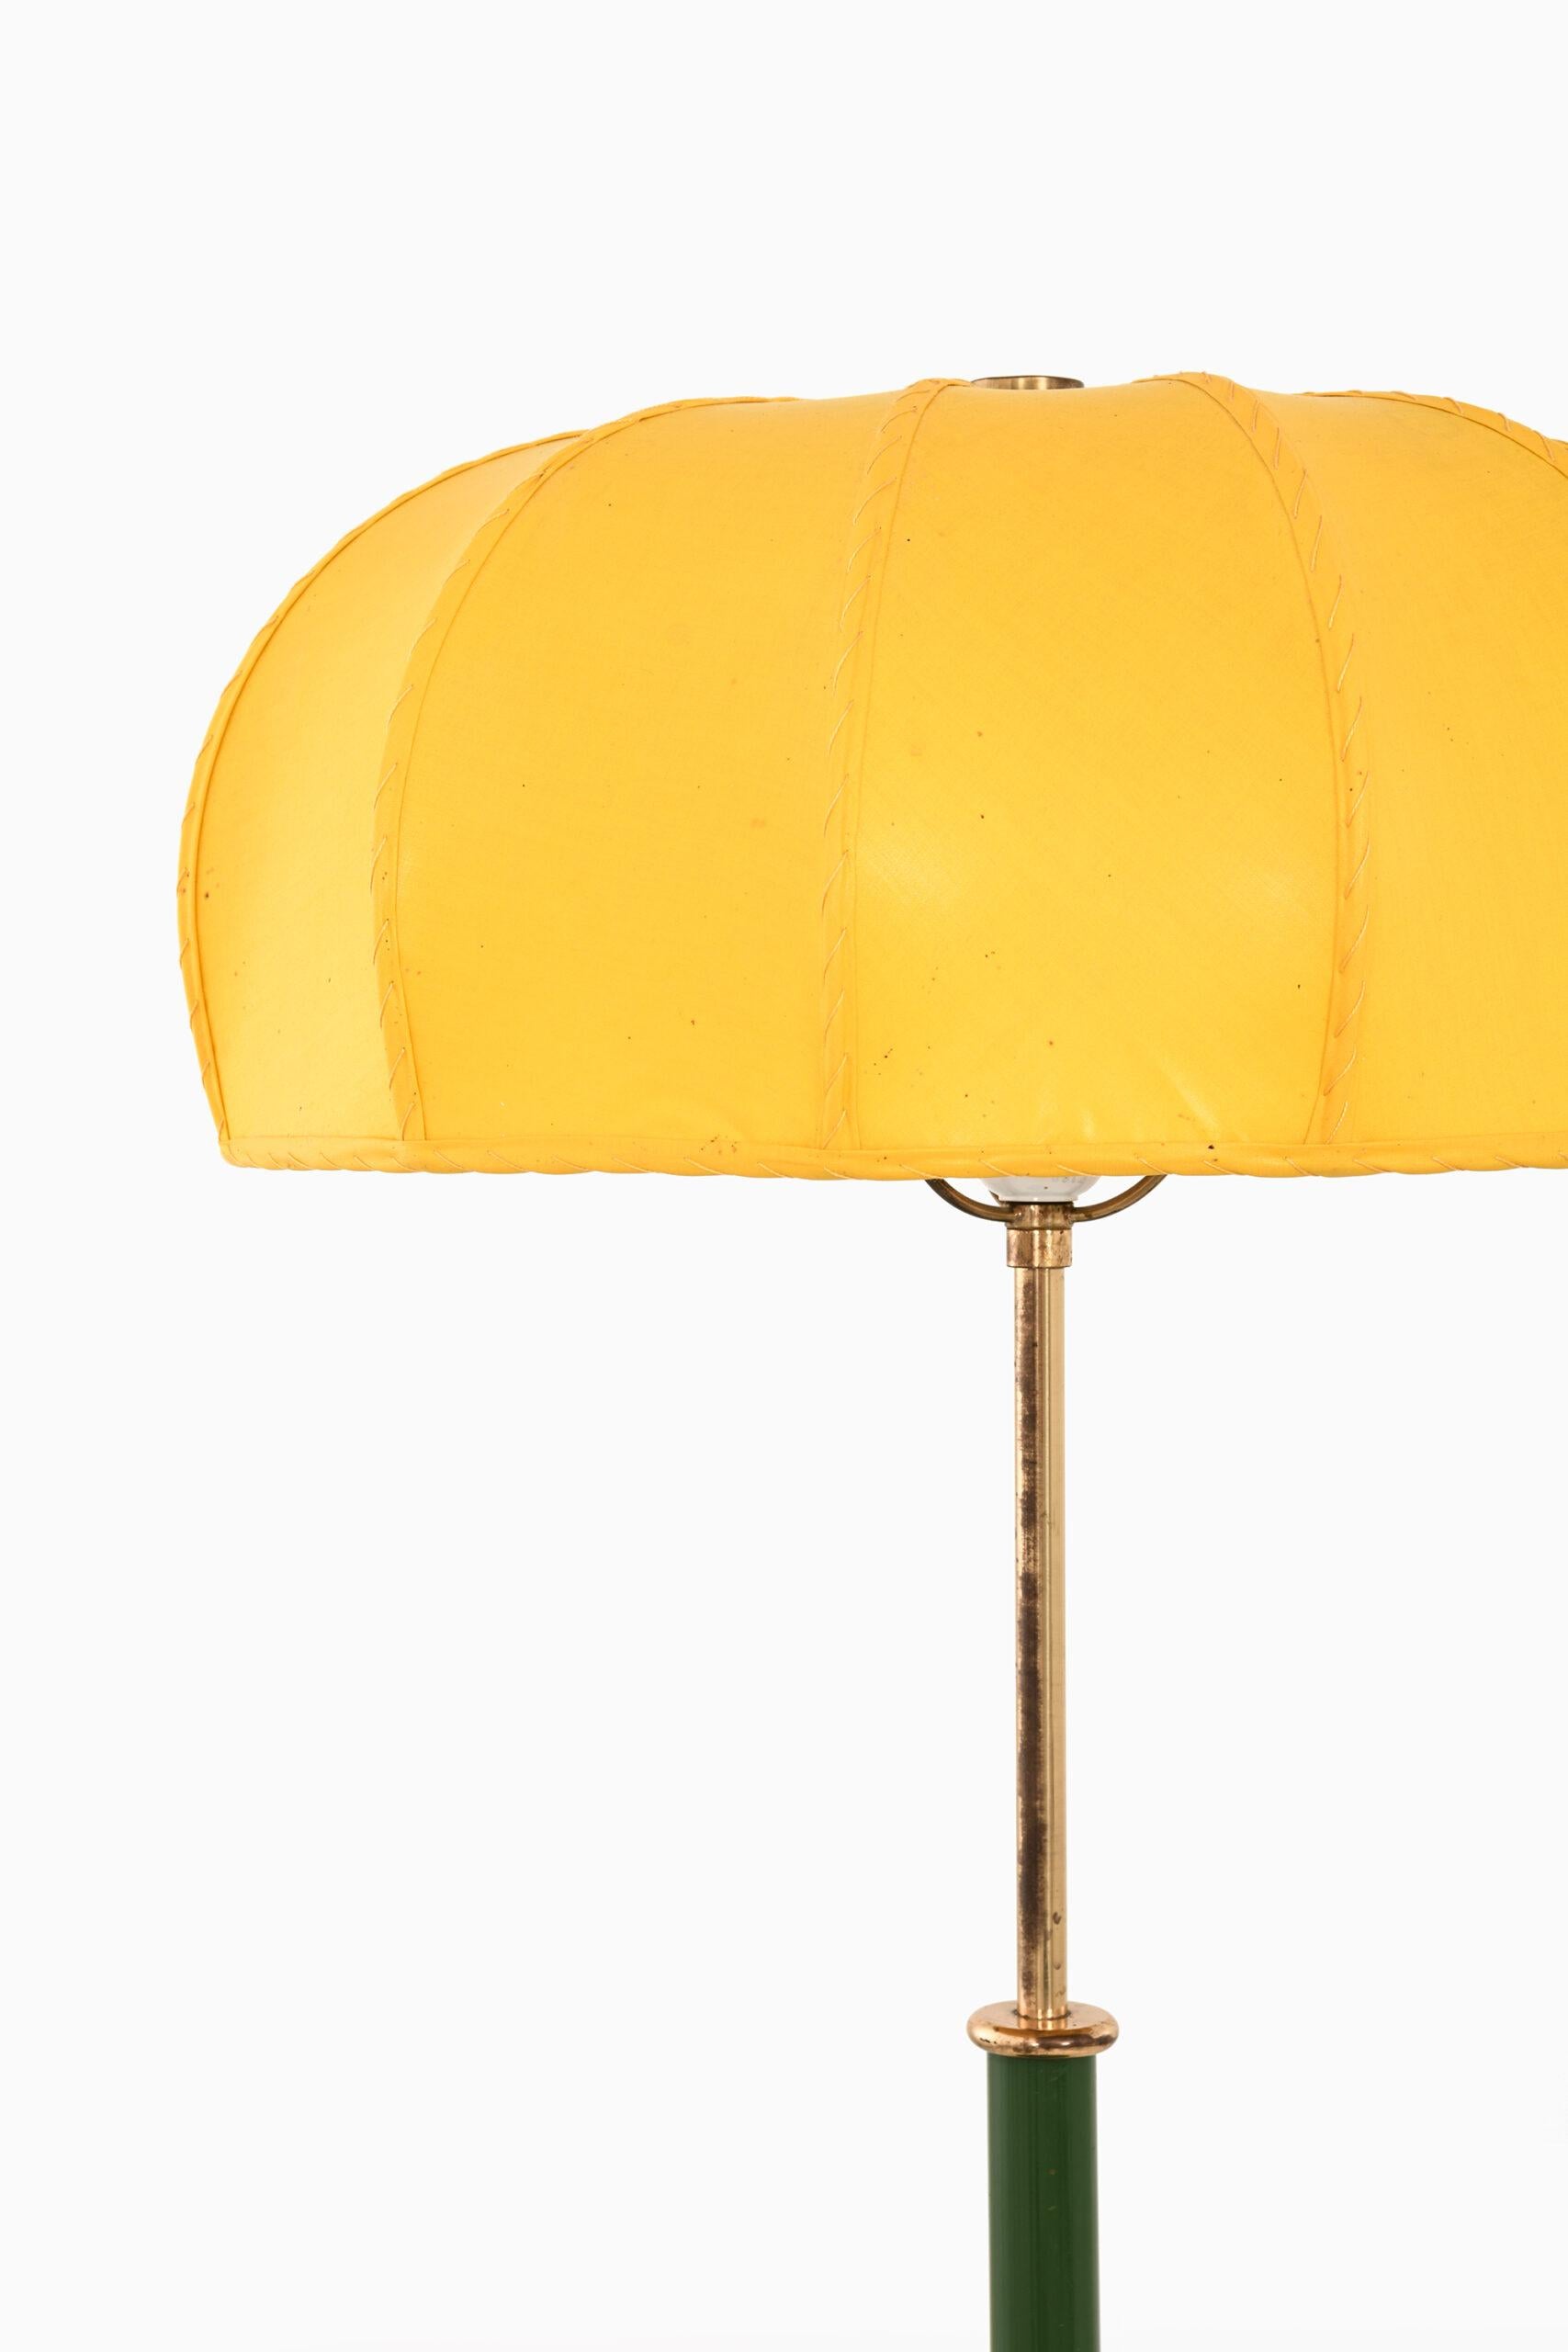 Rare lampe de table modèle G-2466 conçue par Josef Frank. Produit par Svenskt Tenn en Suède.